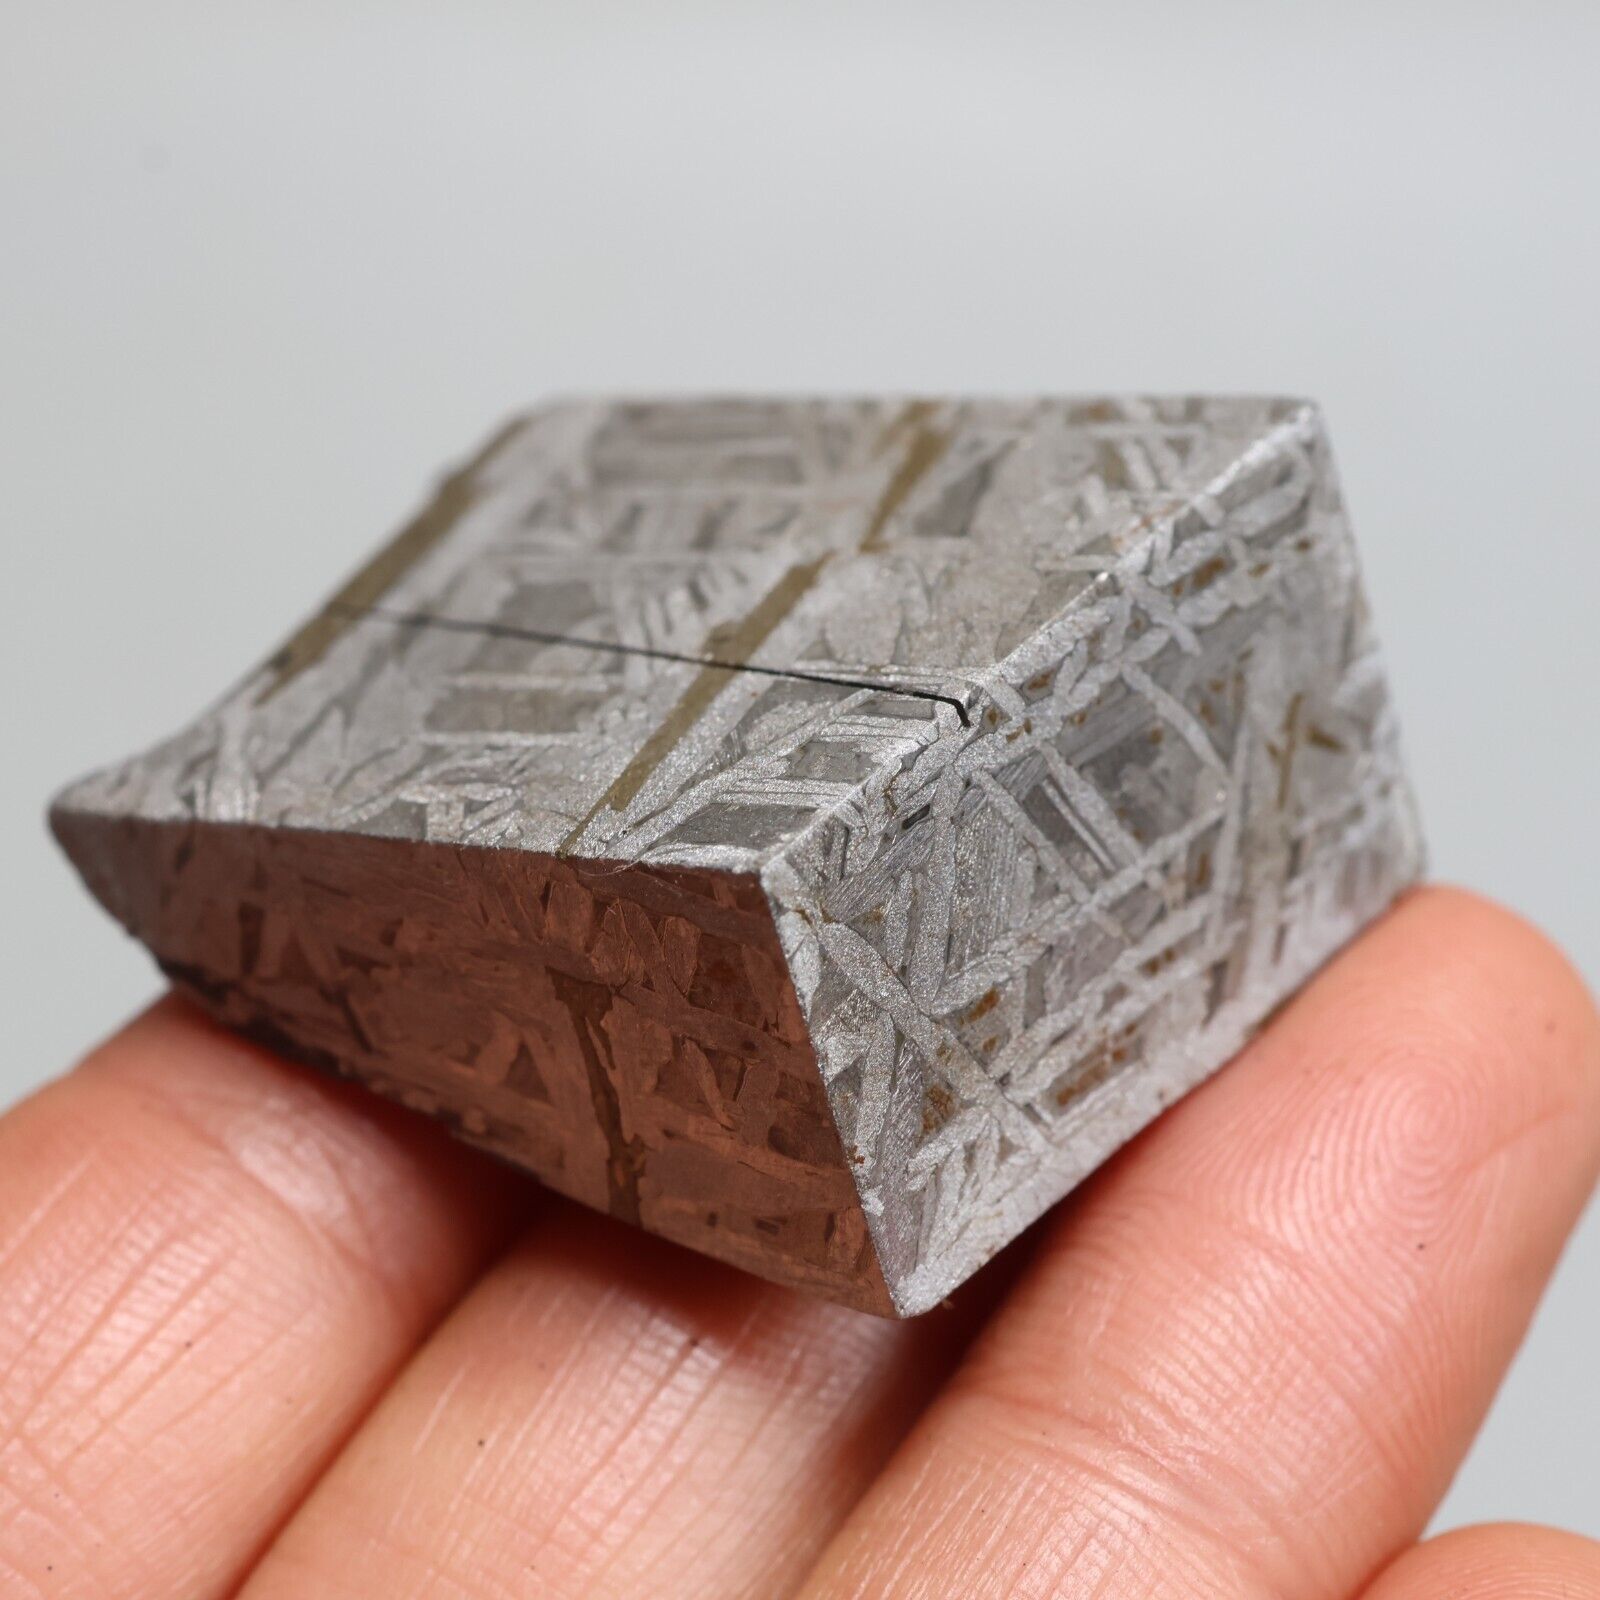 91g Iron meteorite, Muonionalusta iron meteorite slice, Natural Meteorite J256